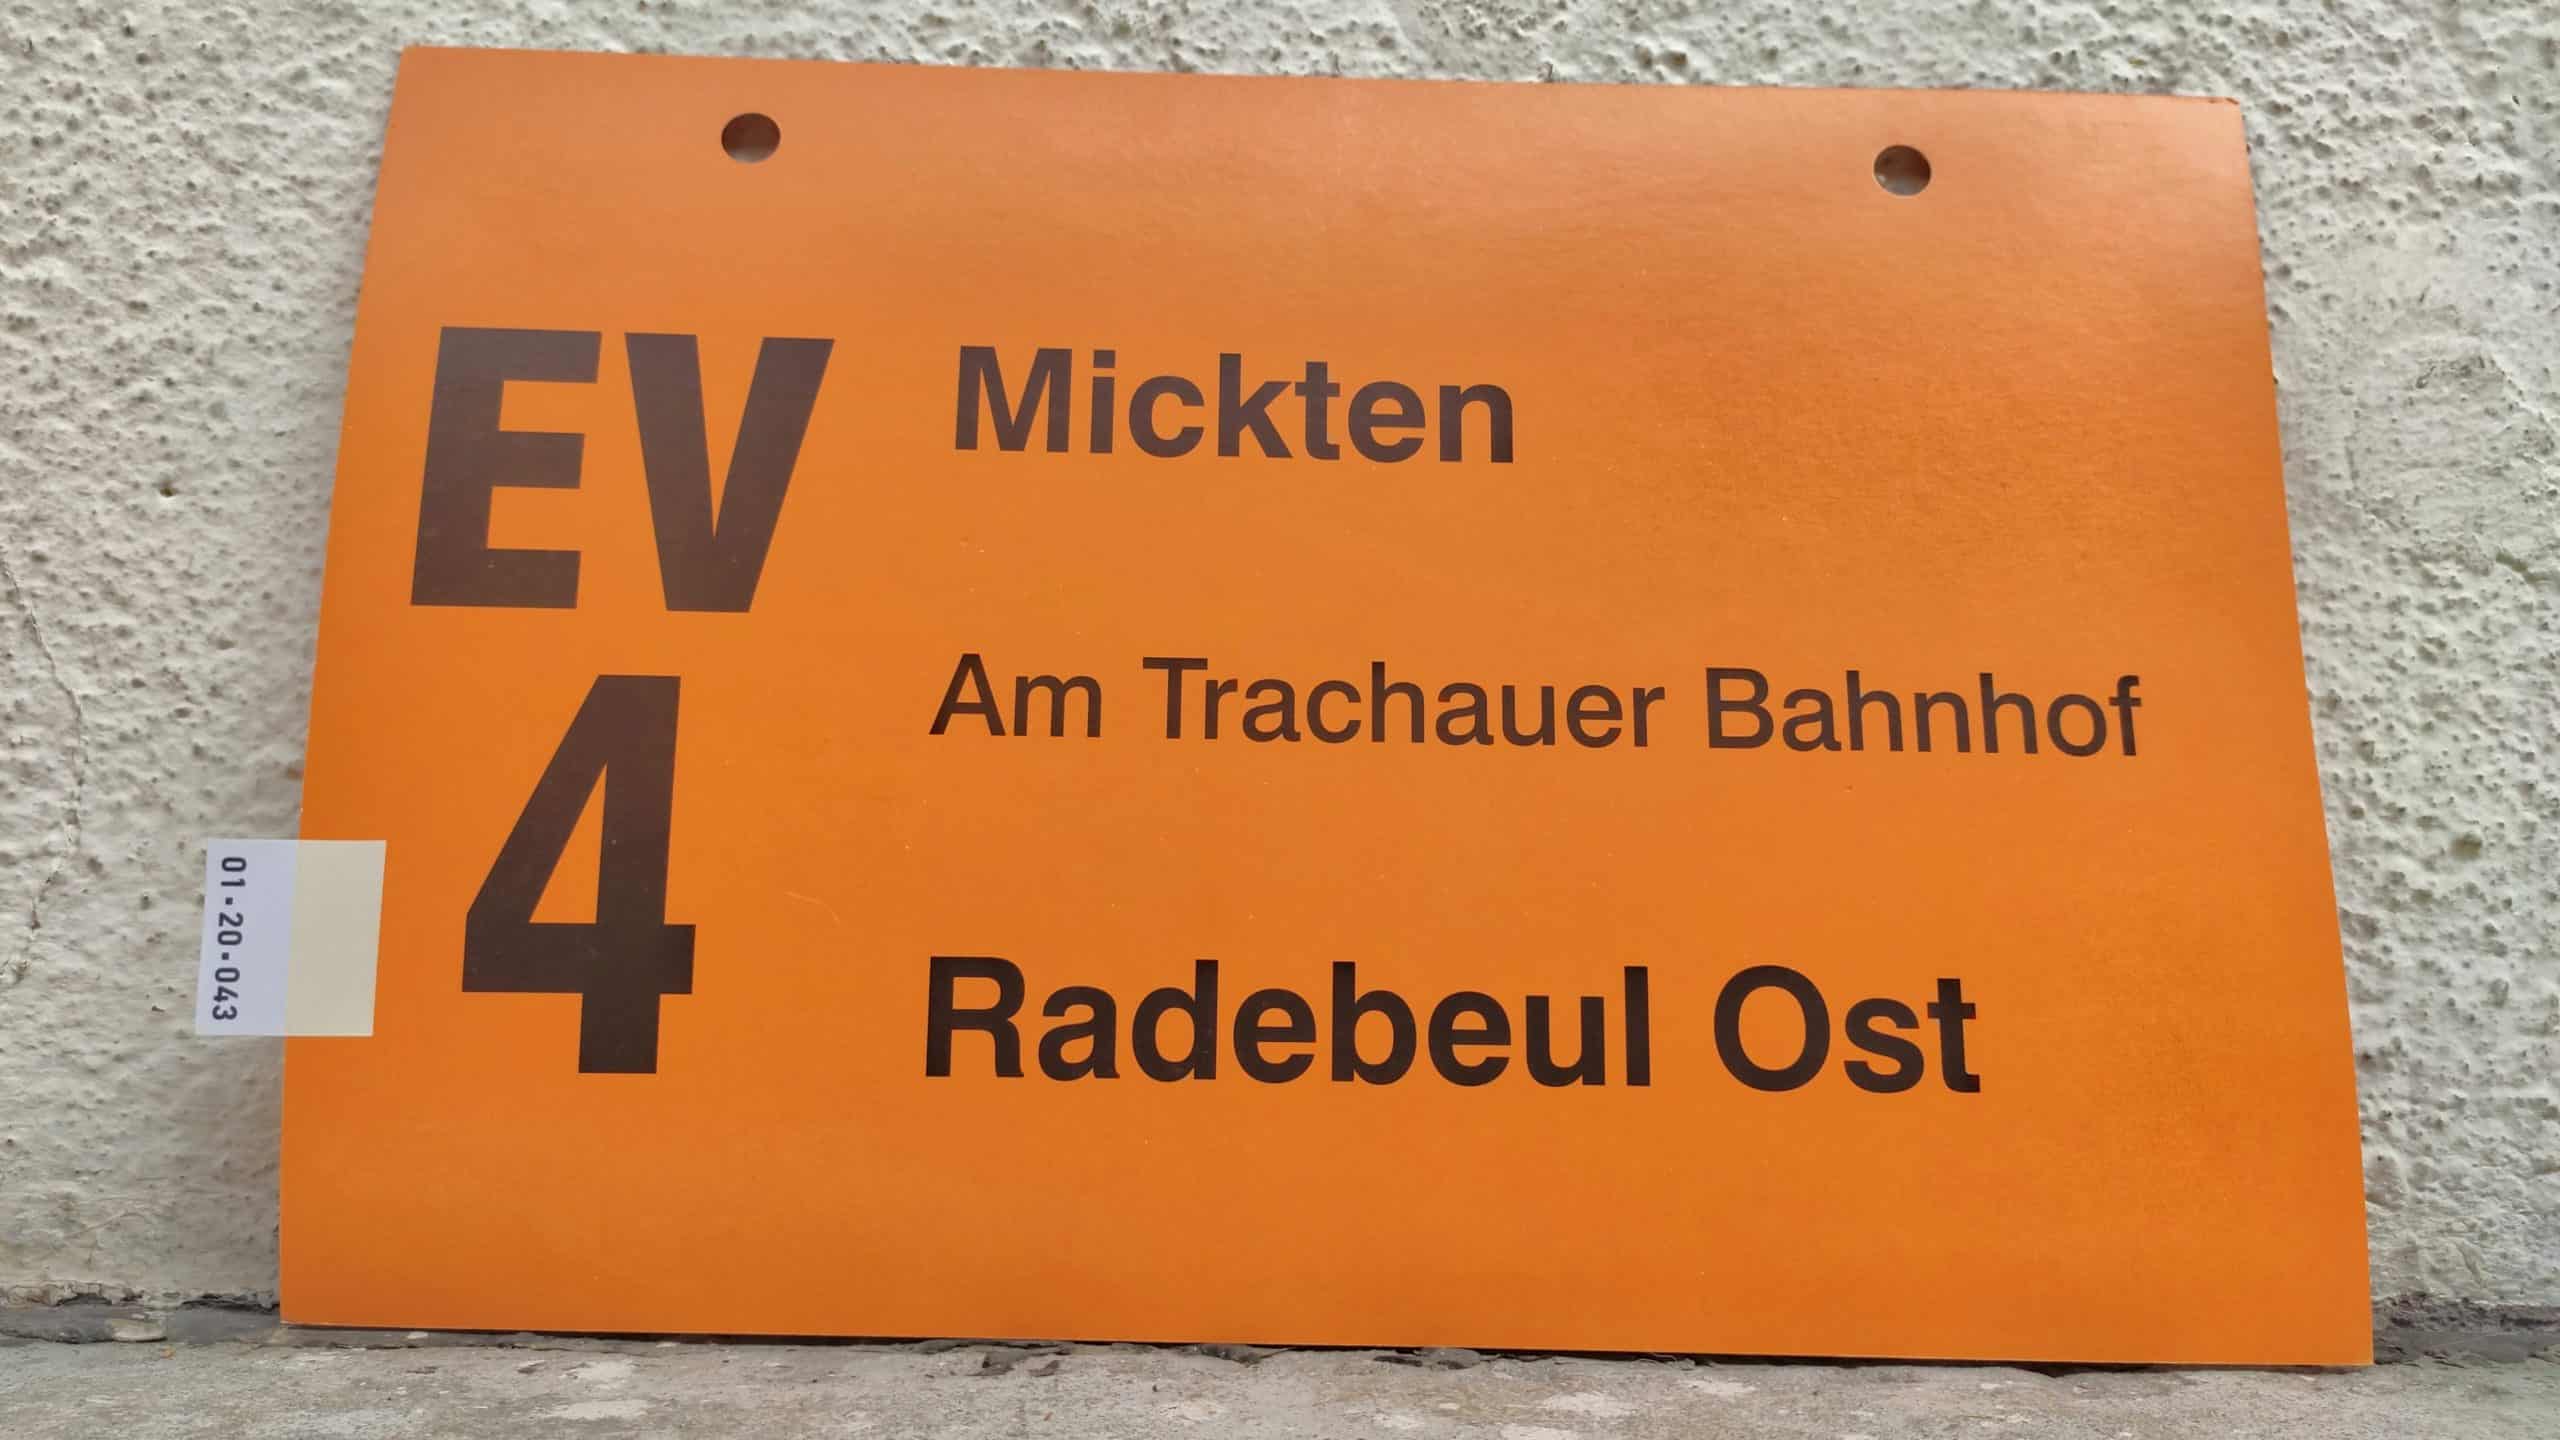 EV 4 Mickten – Radebeul Ost #1